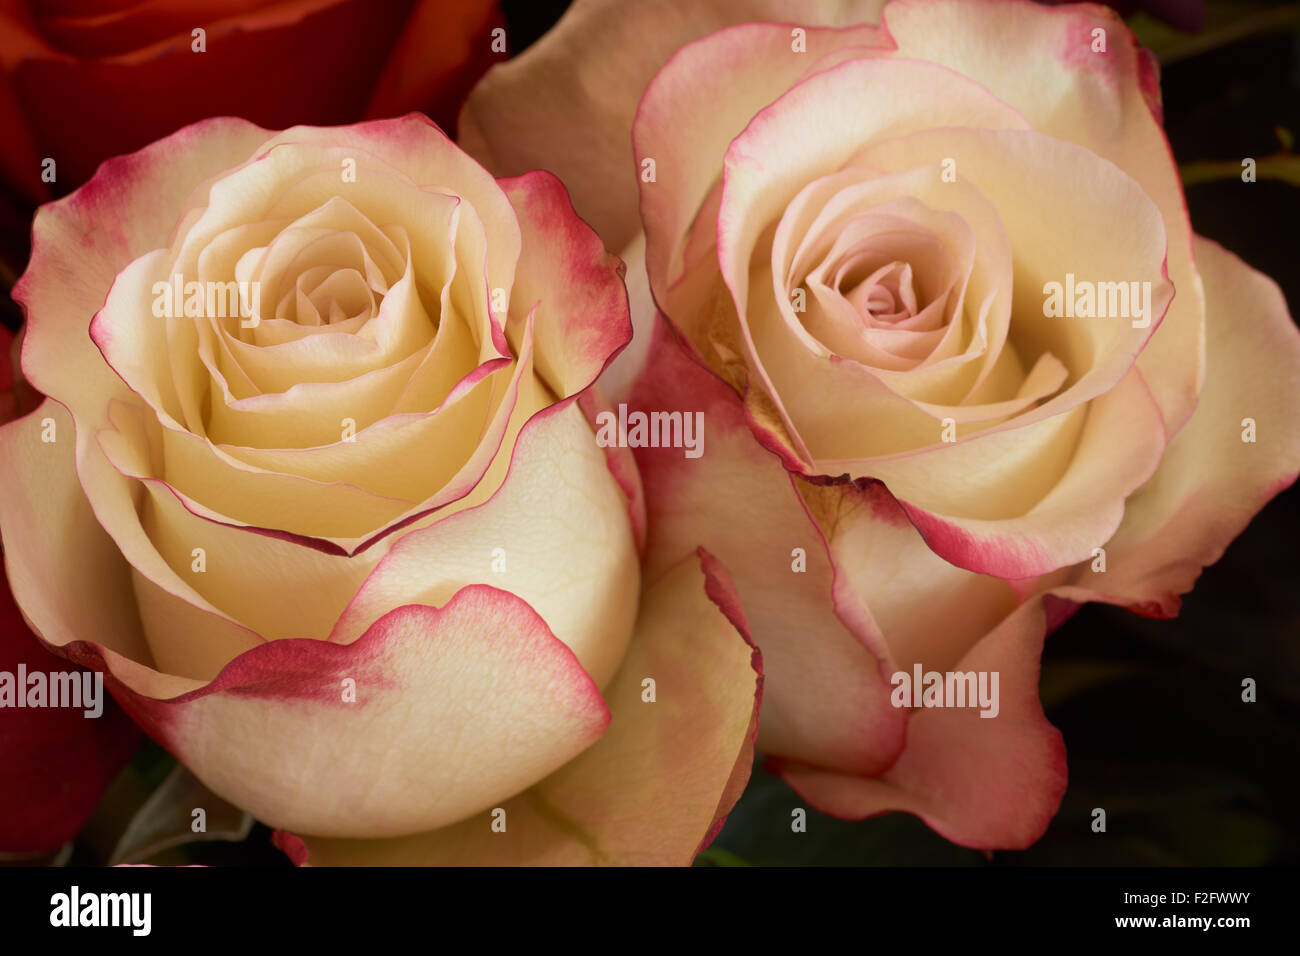 Un plan macro de roses jaunes avec bordures rose Banque D'Images